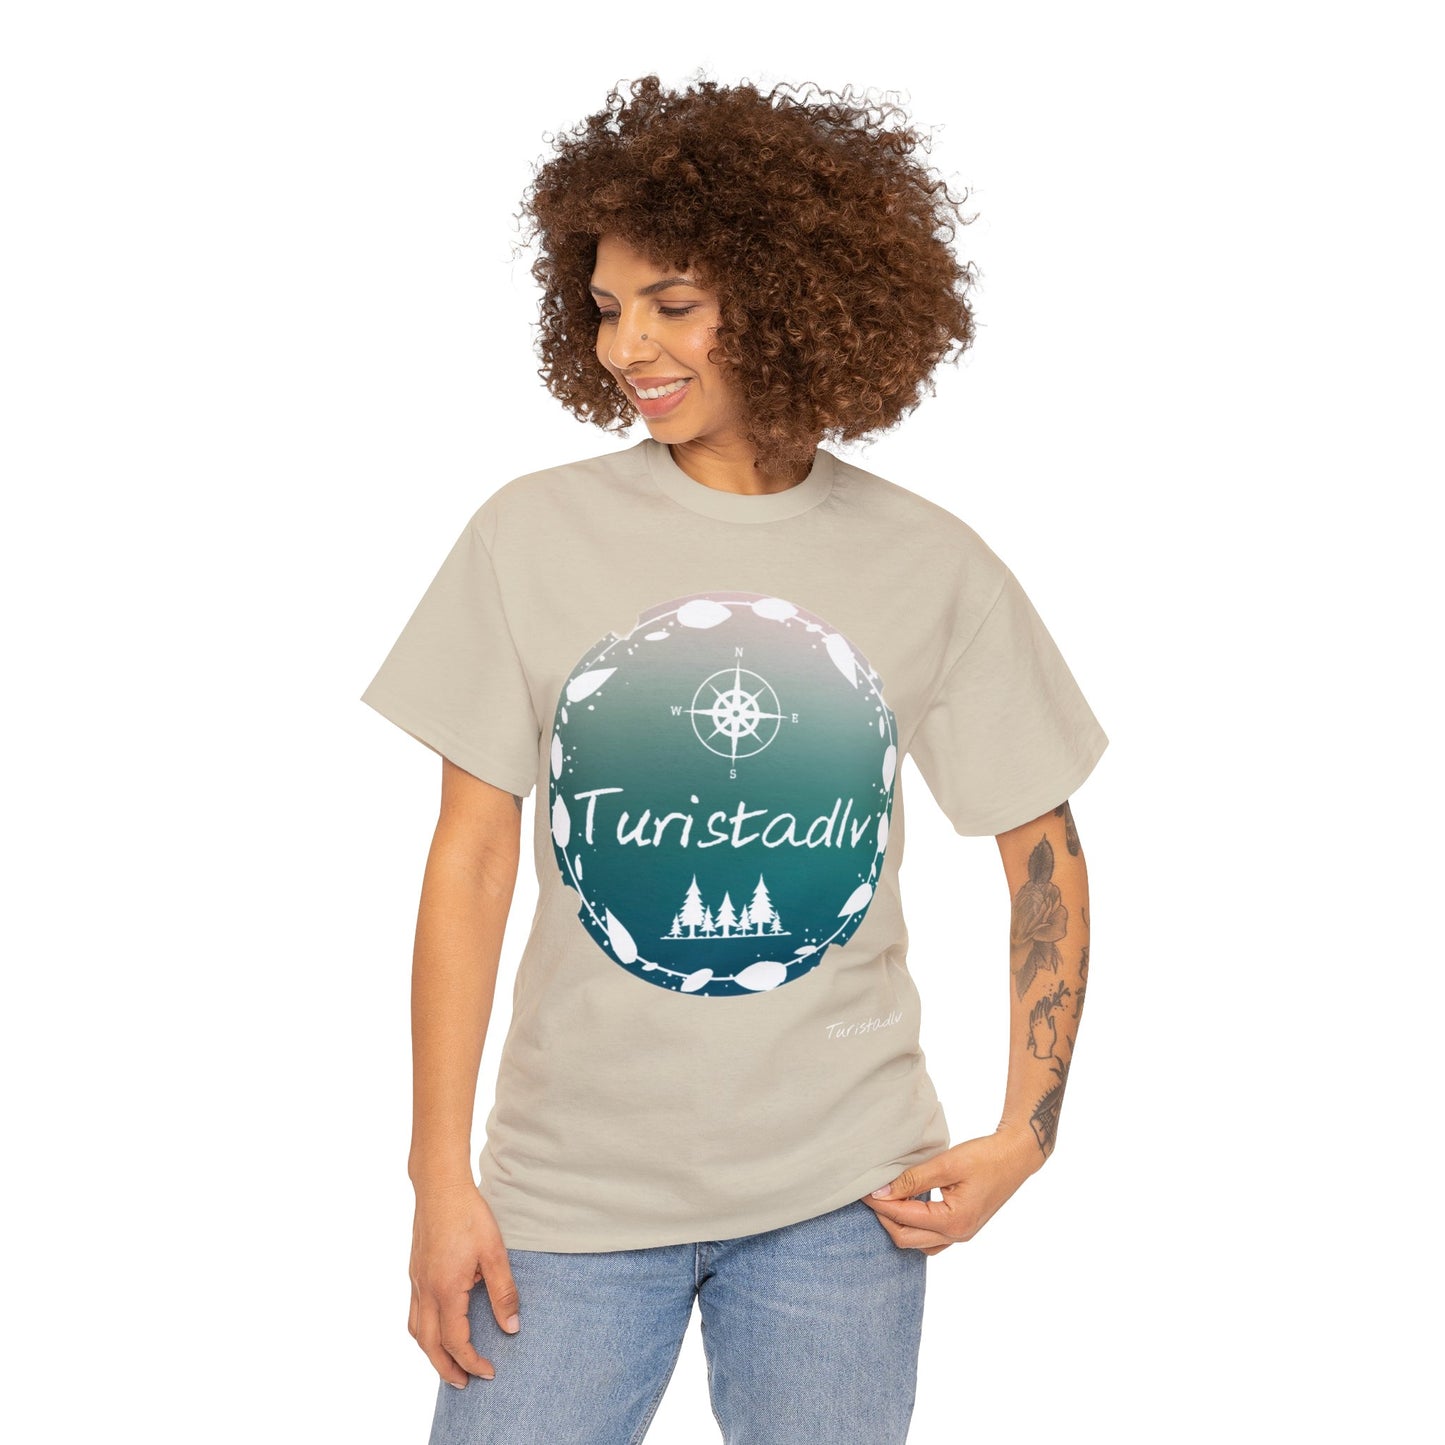 Camiseta de viajero, TURISTADLV, regalo viajero, camiseta de hombre, camiseta de mujer, regalo viajero